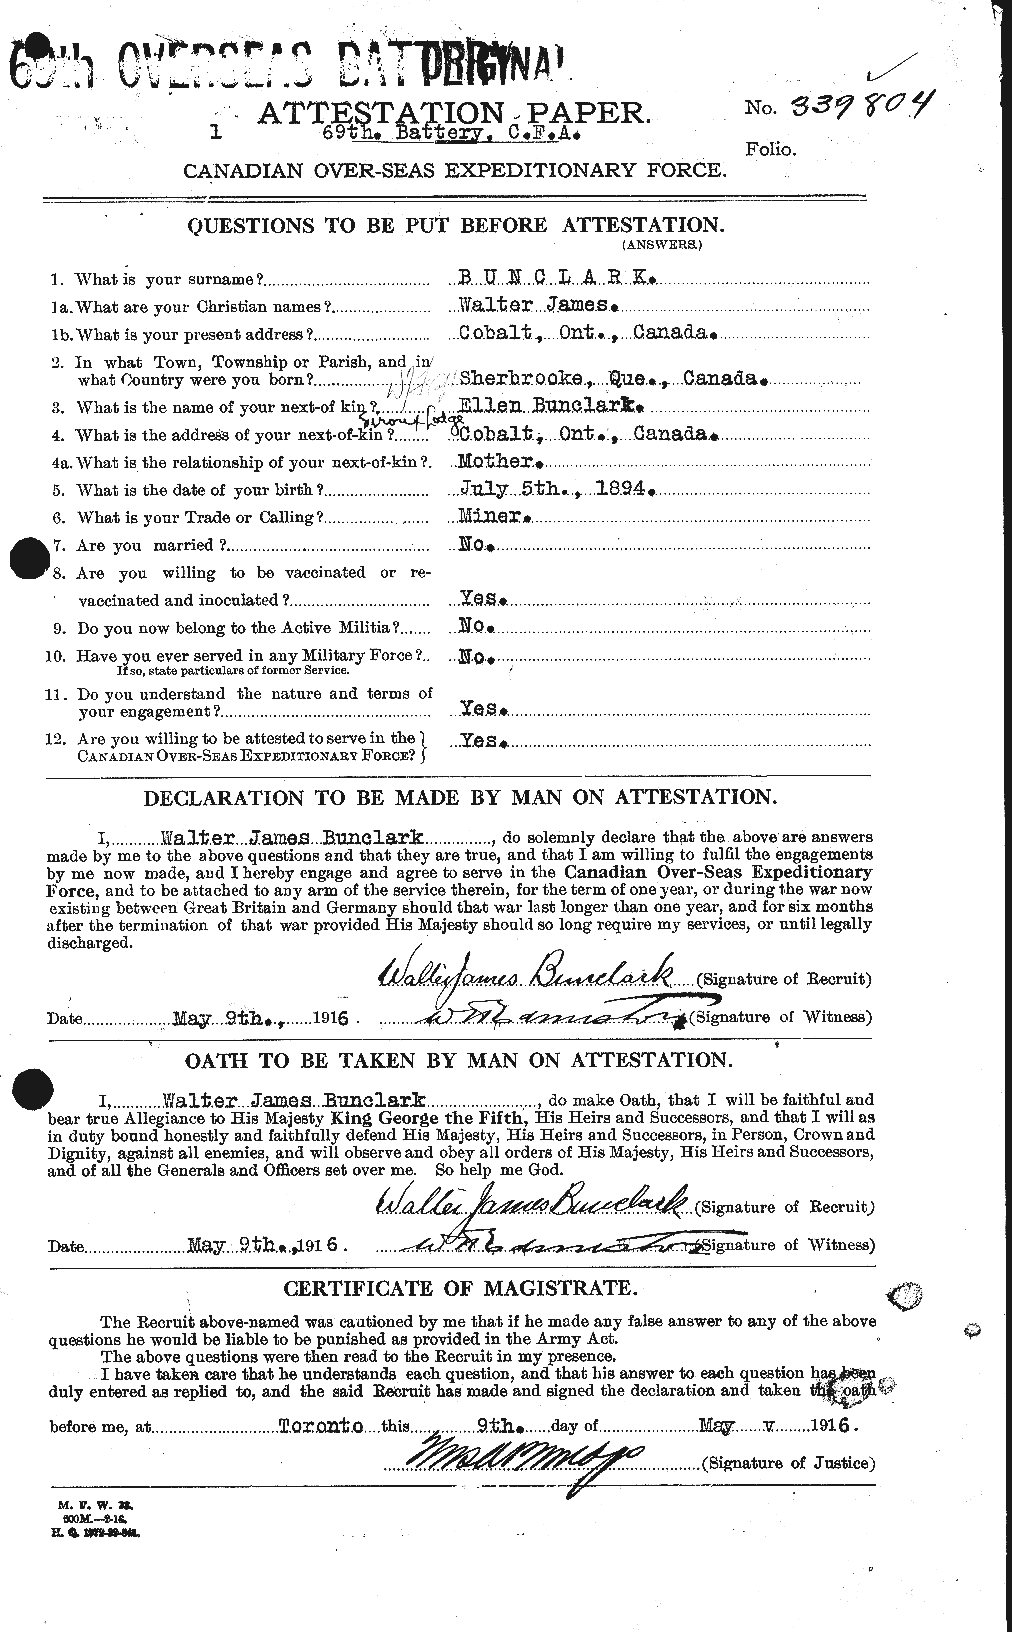 Dossiers du Personnel de la Première Guerre mondiale - CEC 270353a